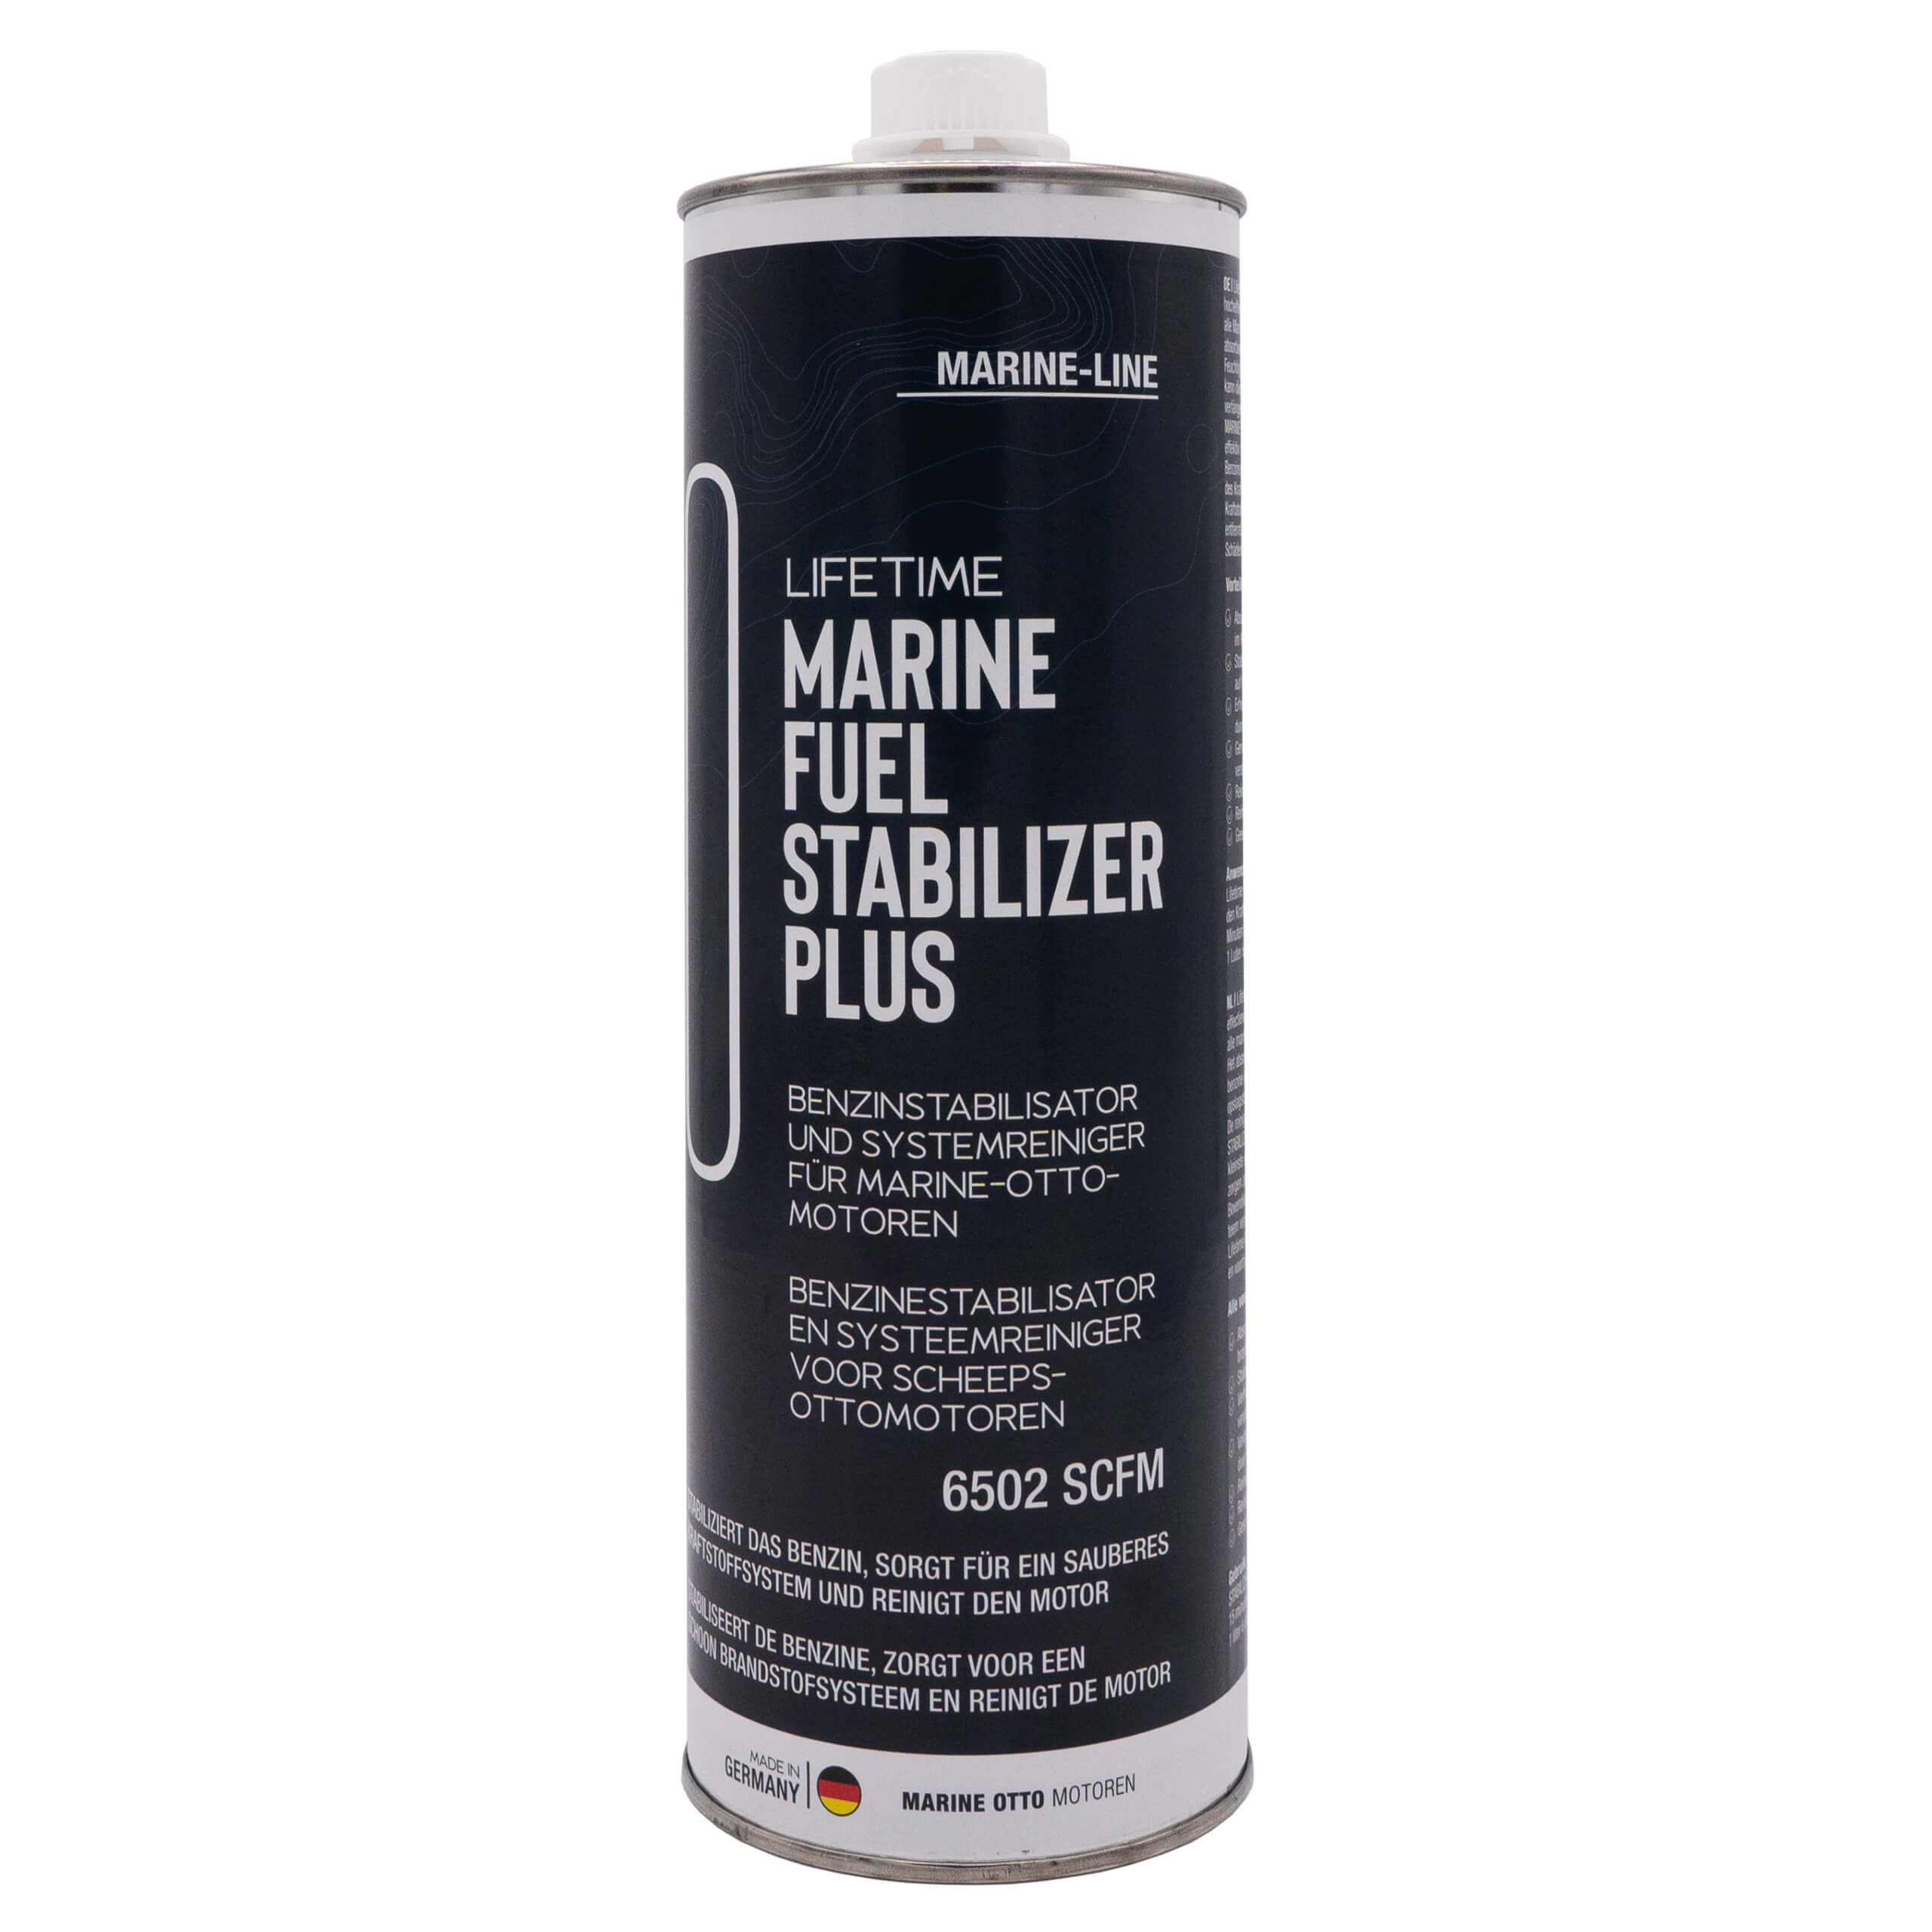 Produktabbildung von Lifetime Marine Fuel Stabilizer Plus auf einem weißen Hintergrund